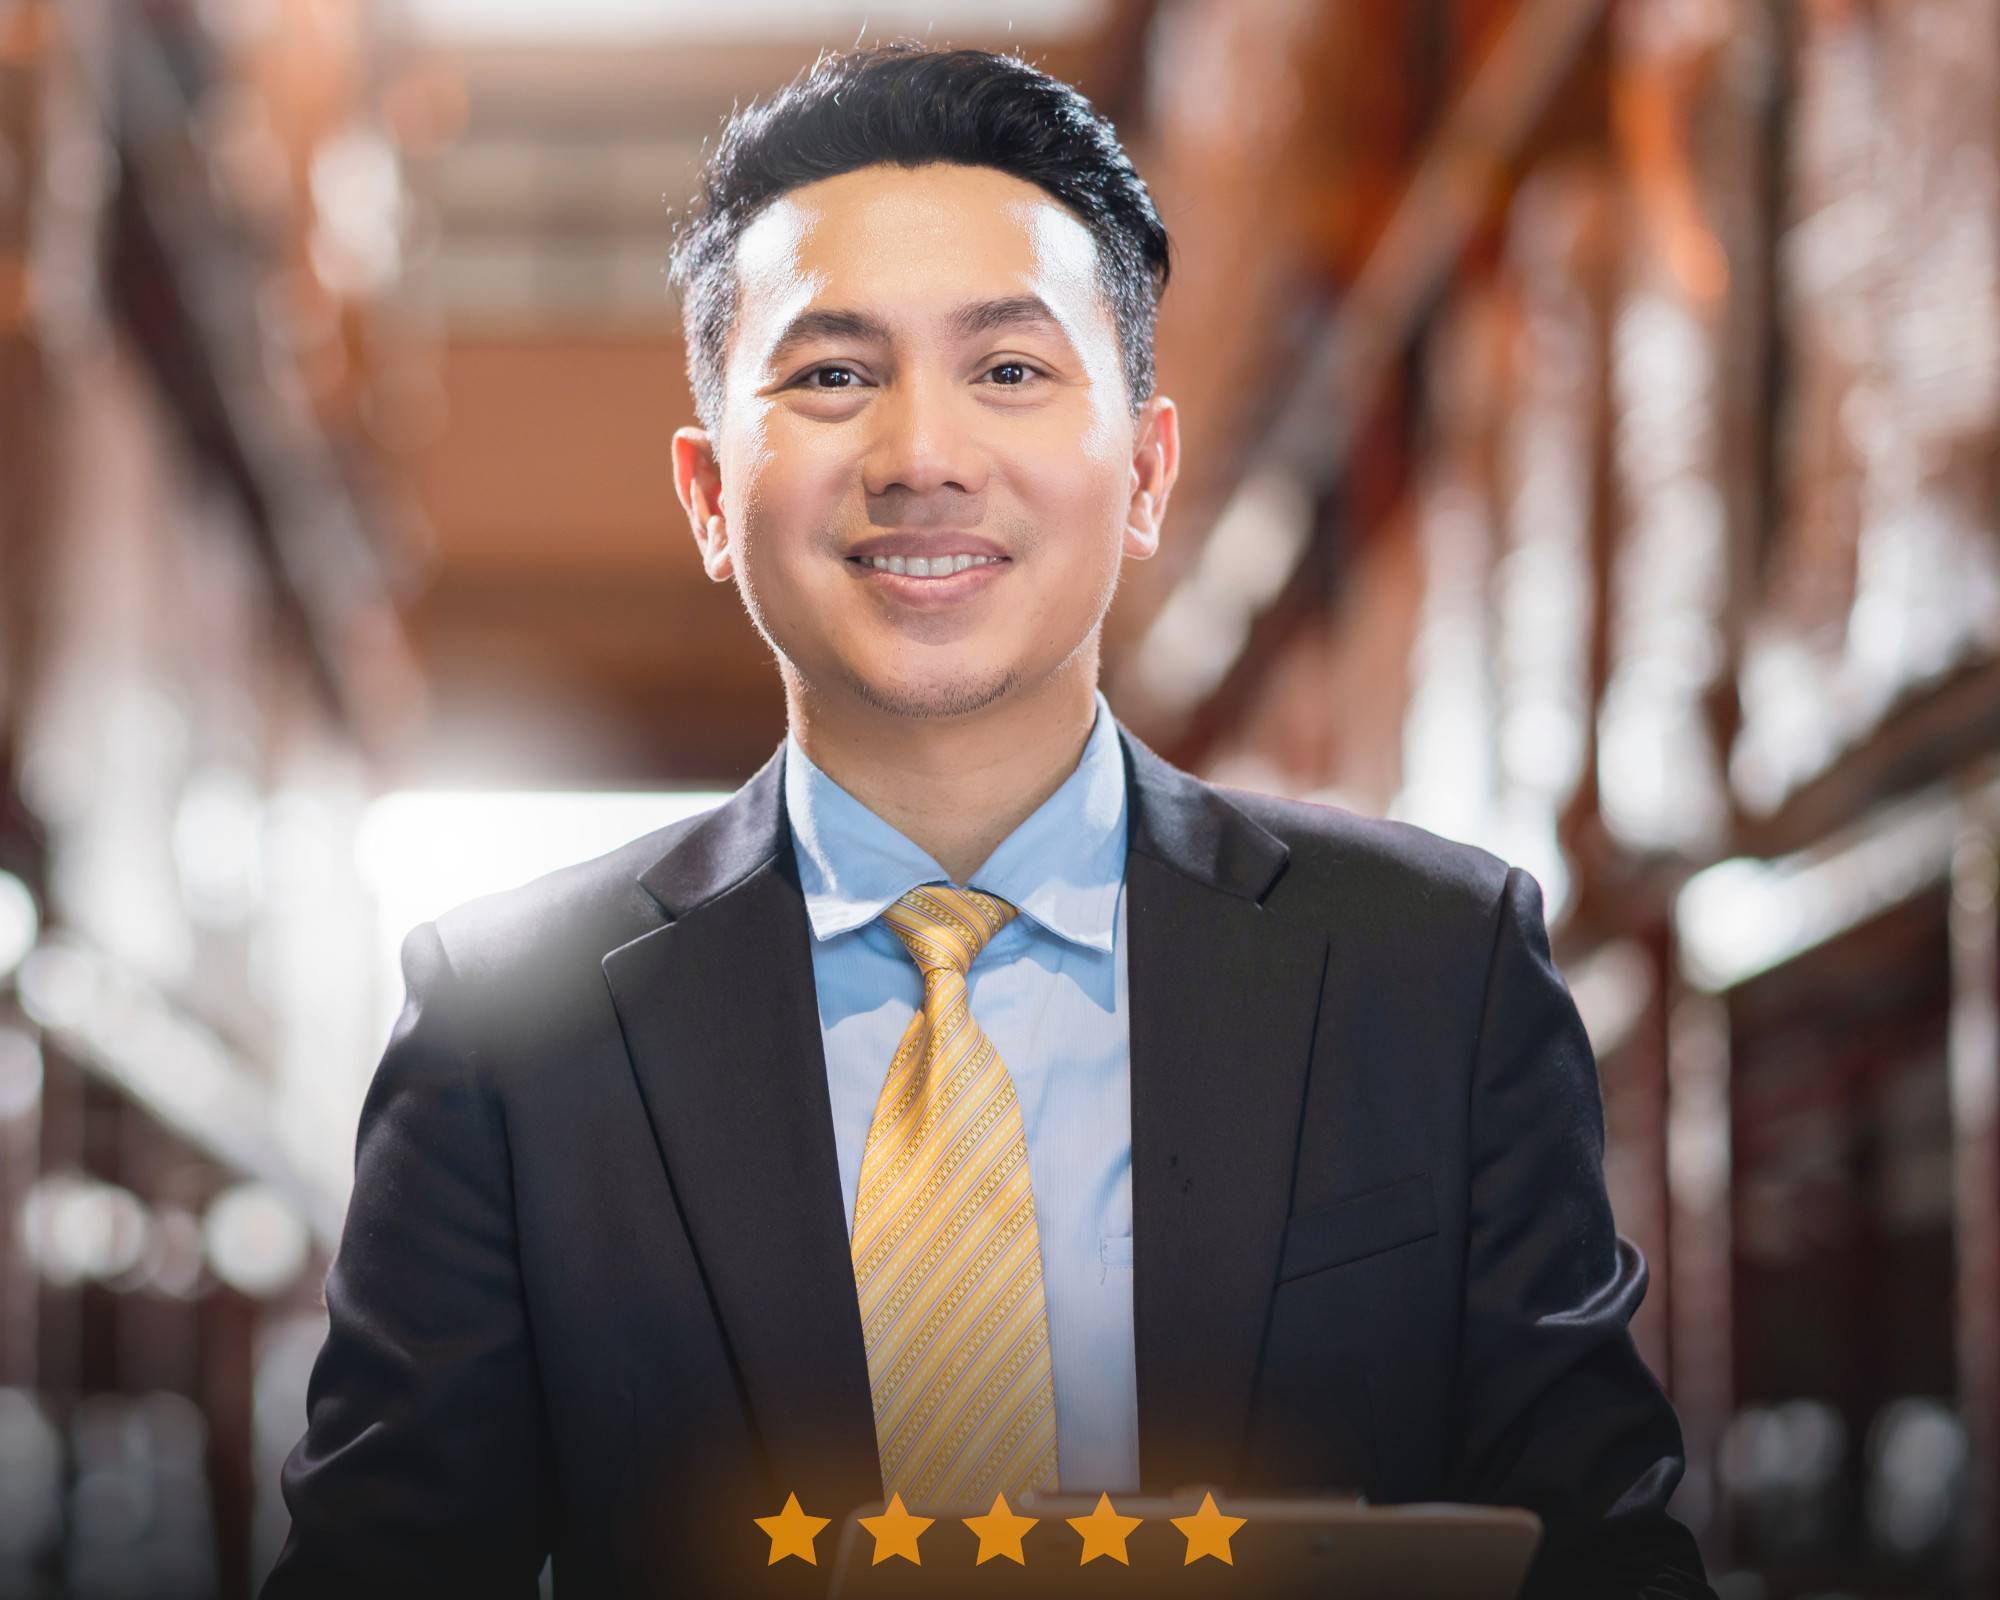 Homme d'affaires souriant avec cravate jaune et cinq étoiles de satisfaction client.